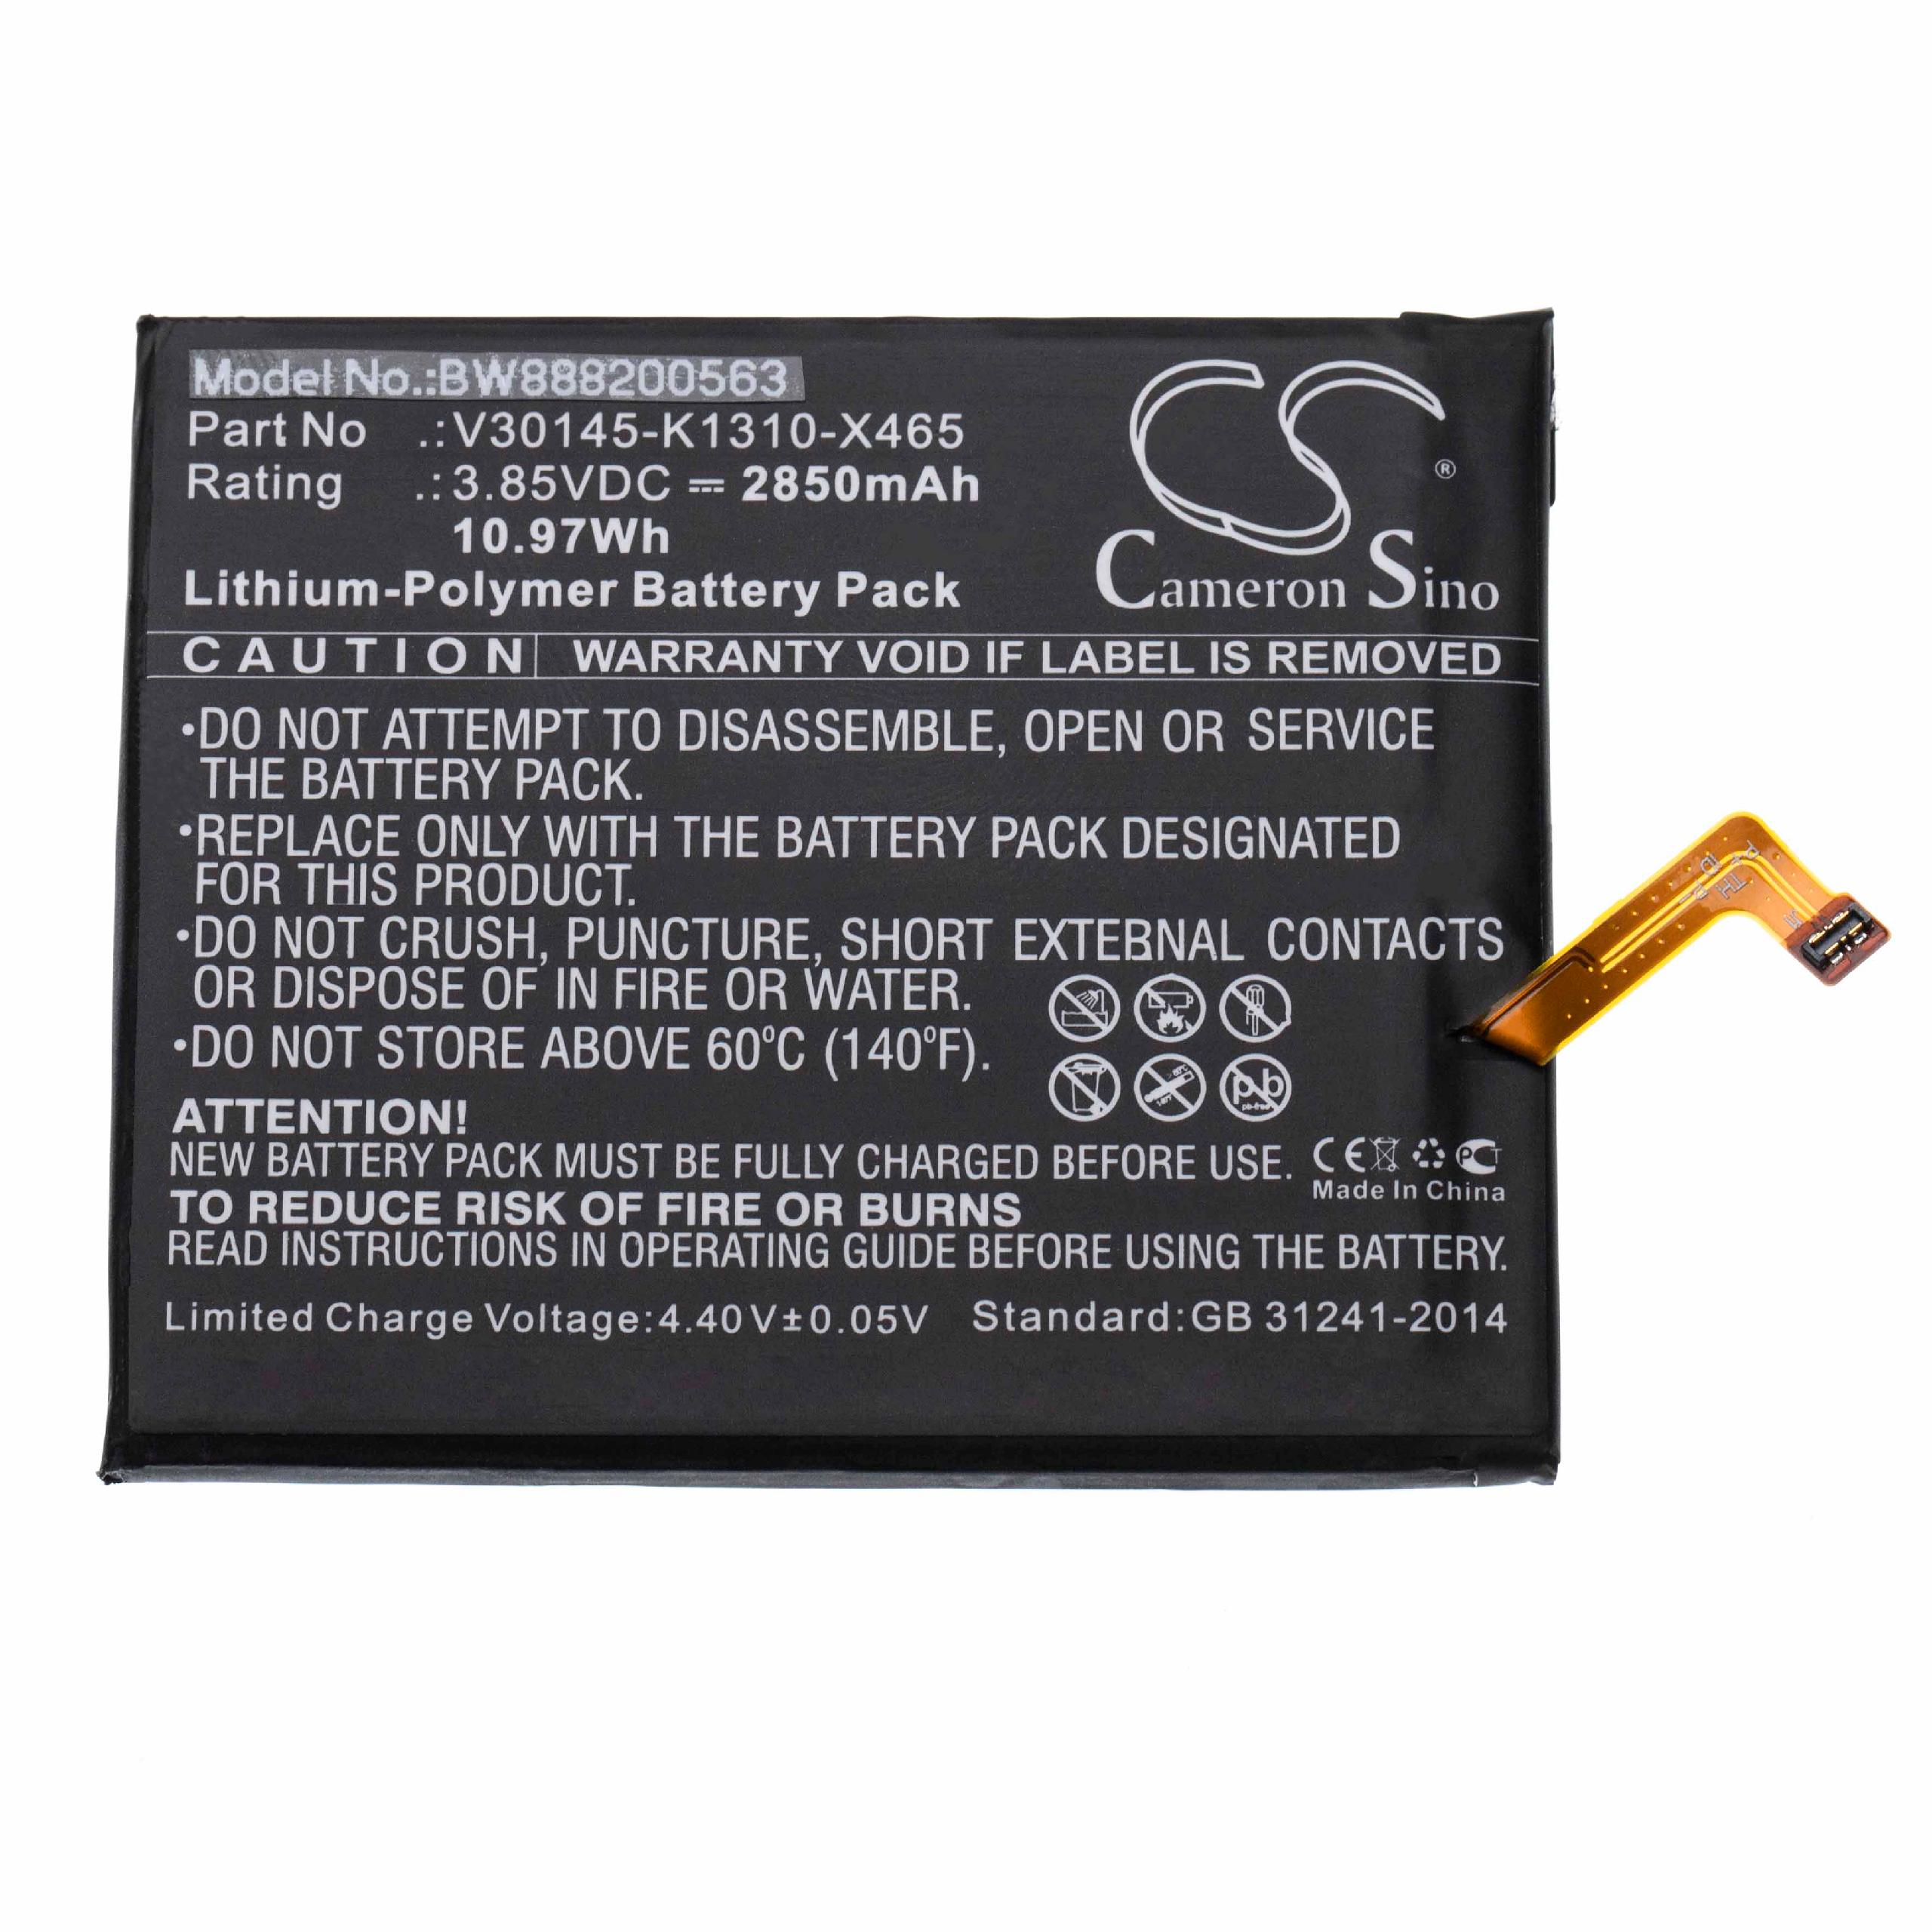 Batterie remplace Gigaset V30145-K1310-X465 pour téléphone portable - 2850mAh, 3,85V, Li-polymère